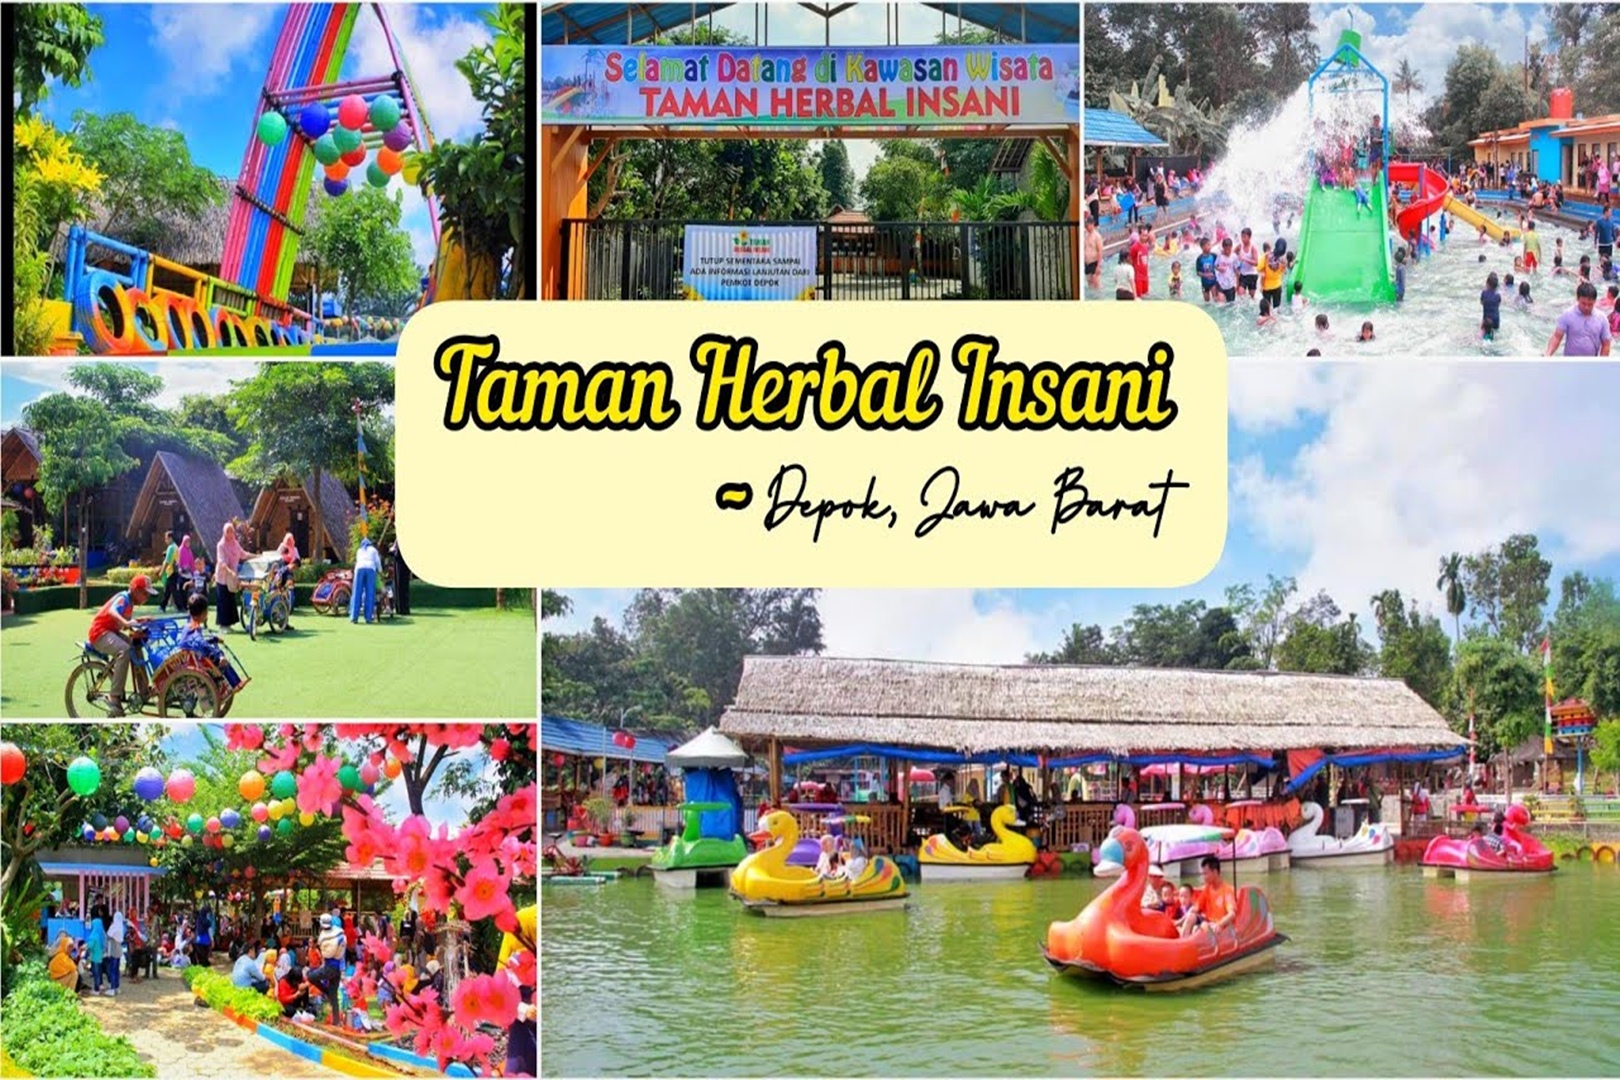 Serunya Wisata Edukasi Obat Herbal di Taman Herbal Insani Bojongsari, Cuma Sejengkal dari Jakarta!